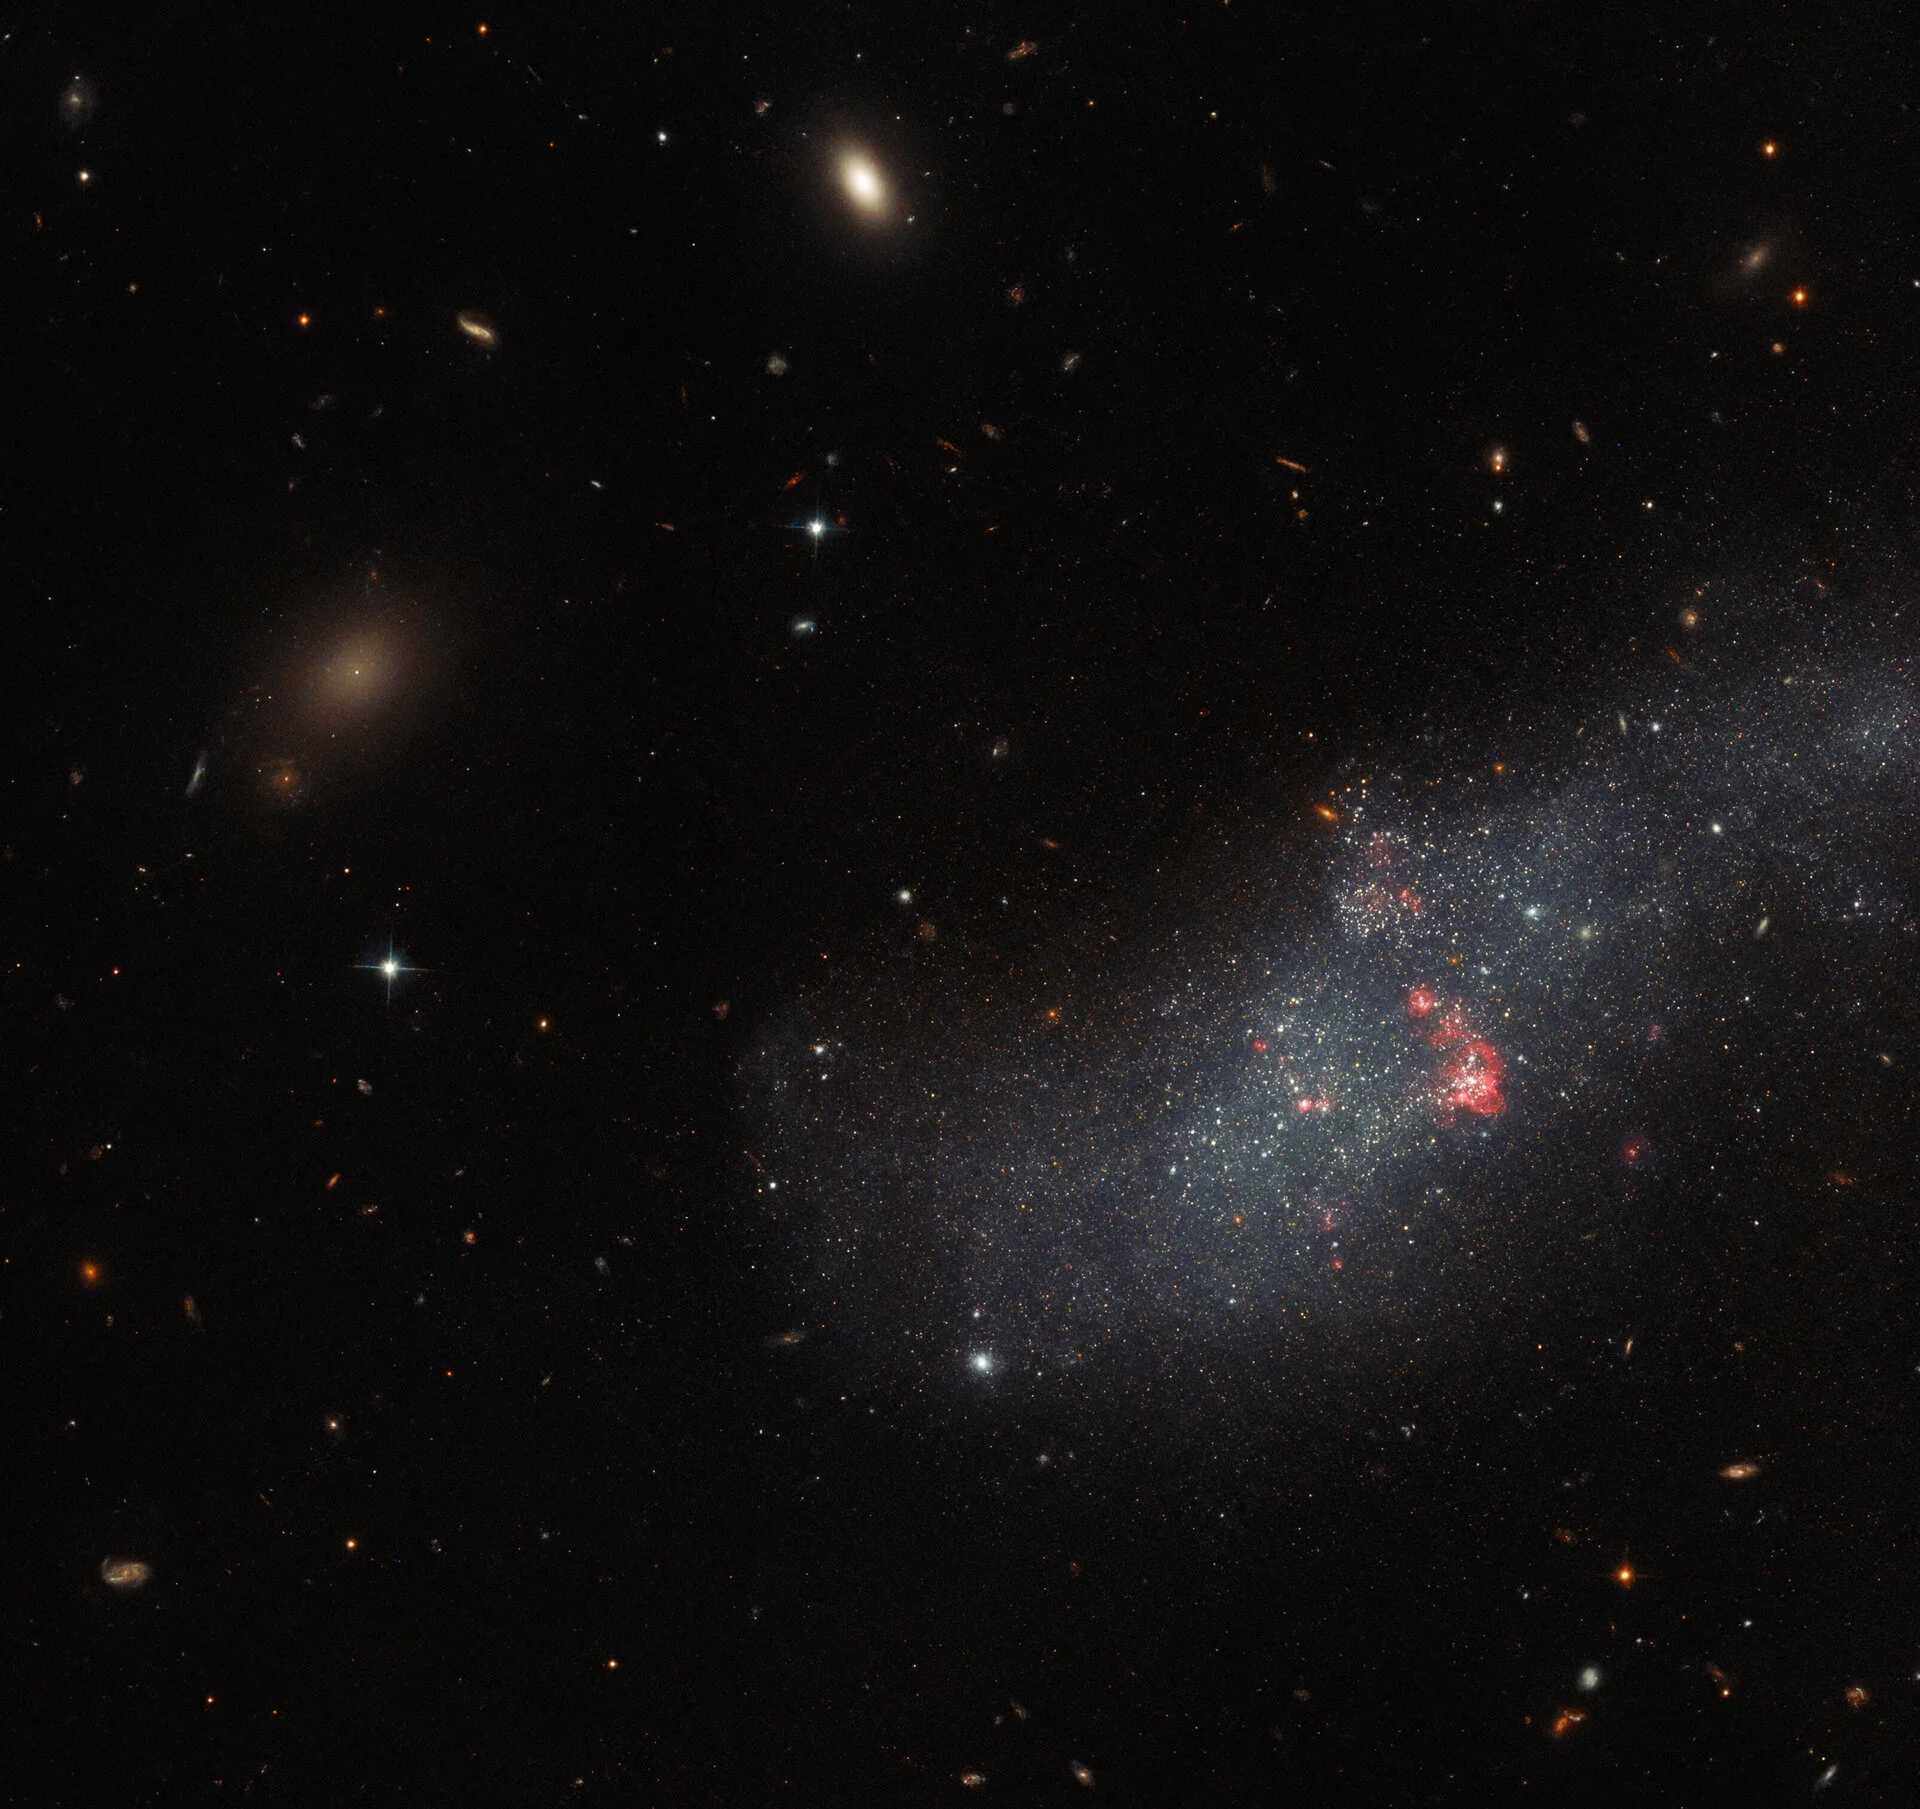 Hubble uzay teleskobu, UGCA 307 adlı galaksiyi görüntüledi